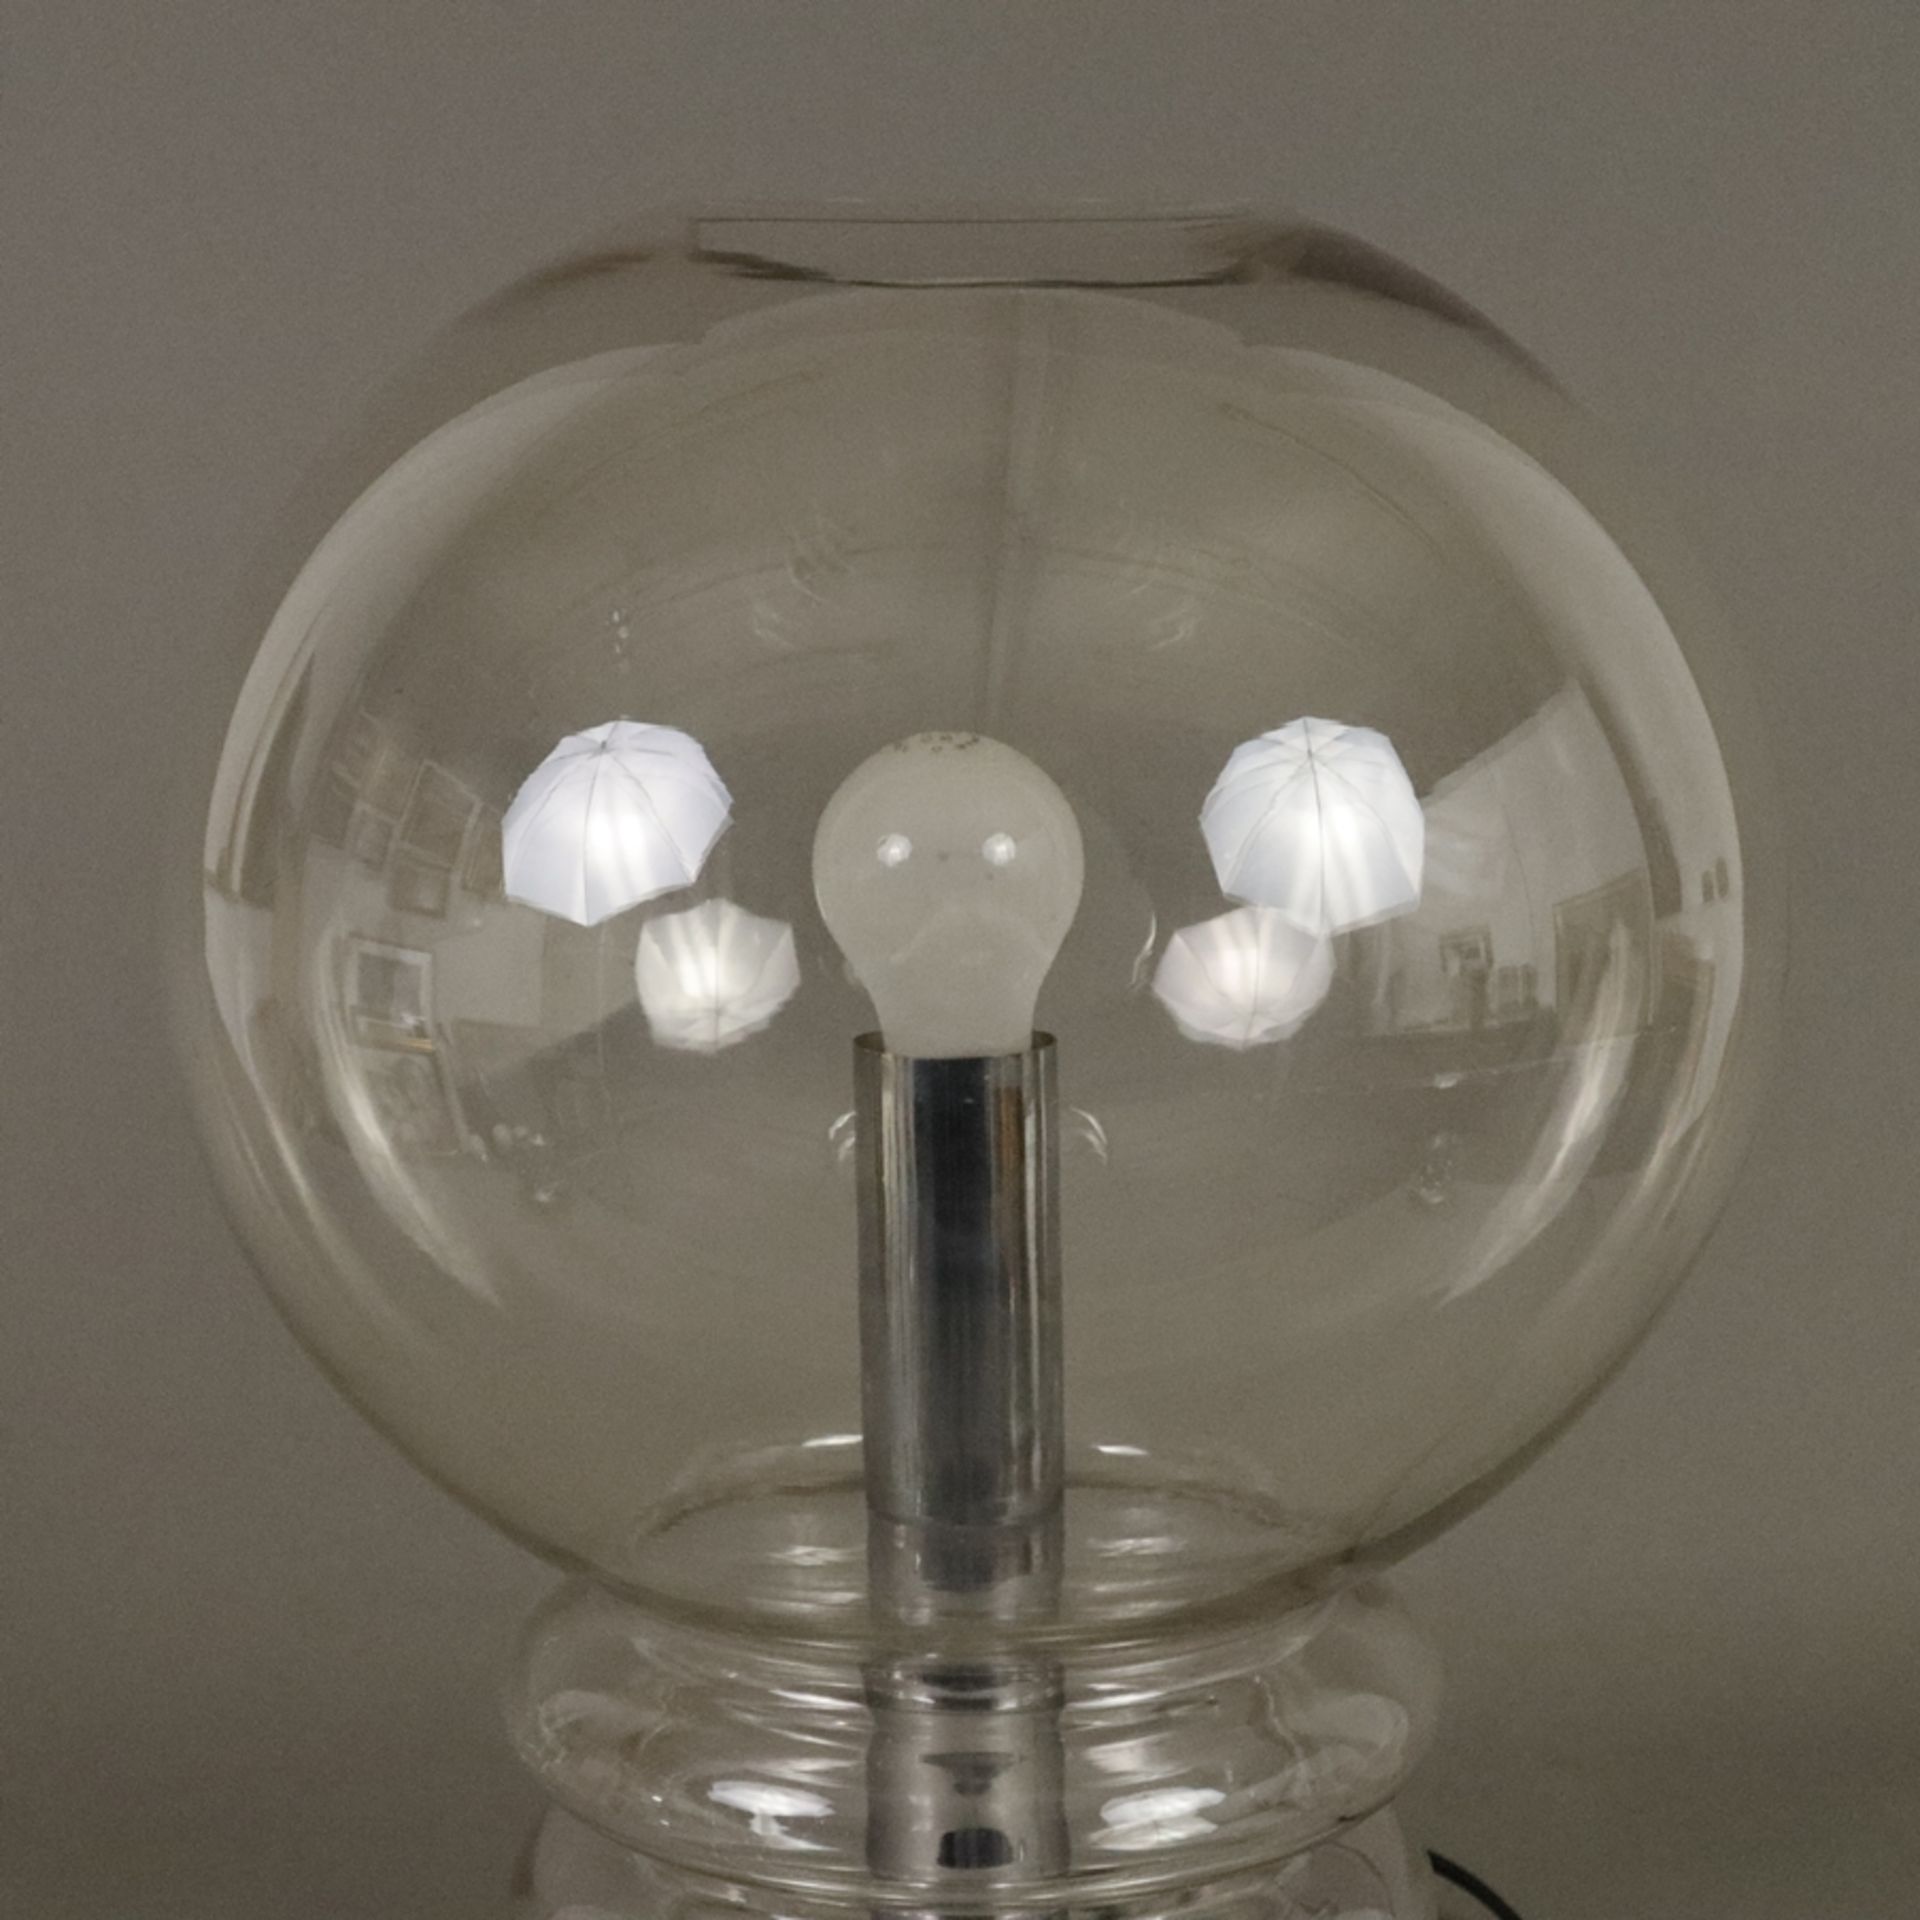 Große Space Age-Tischlampe "Moon Bulb" - Glashütte Limburg, um 1970/80, mundgeblasenes, leicht getö - Bild 3 aus 6